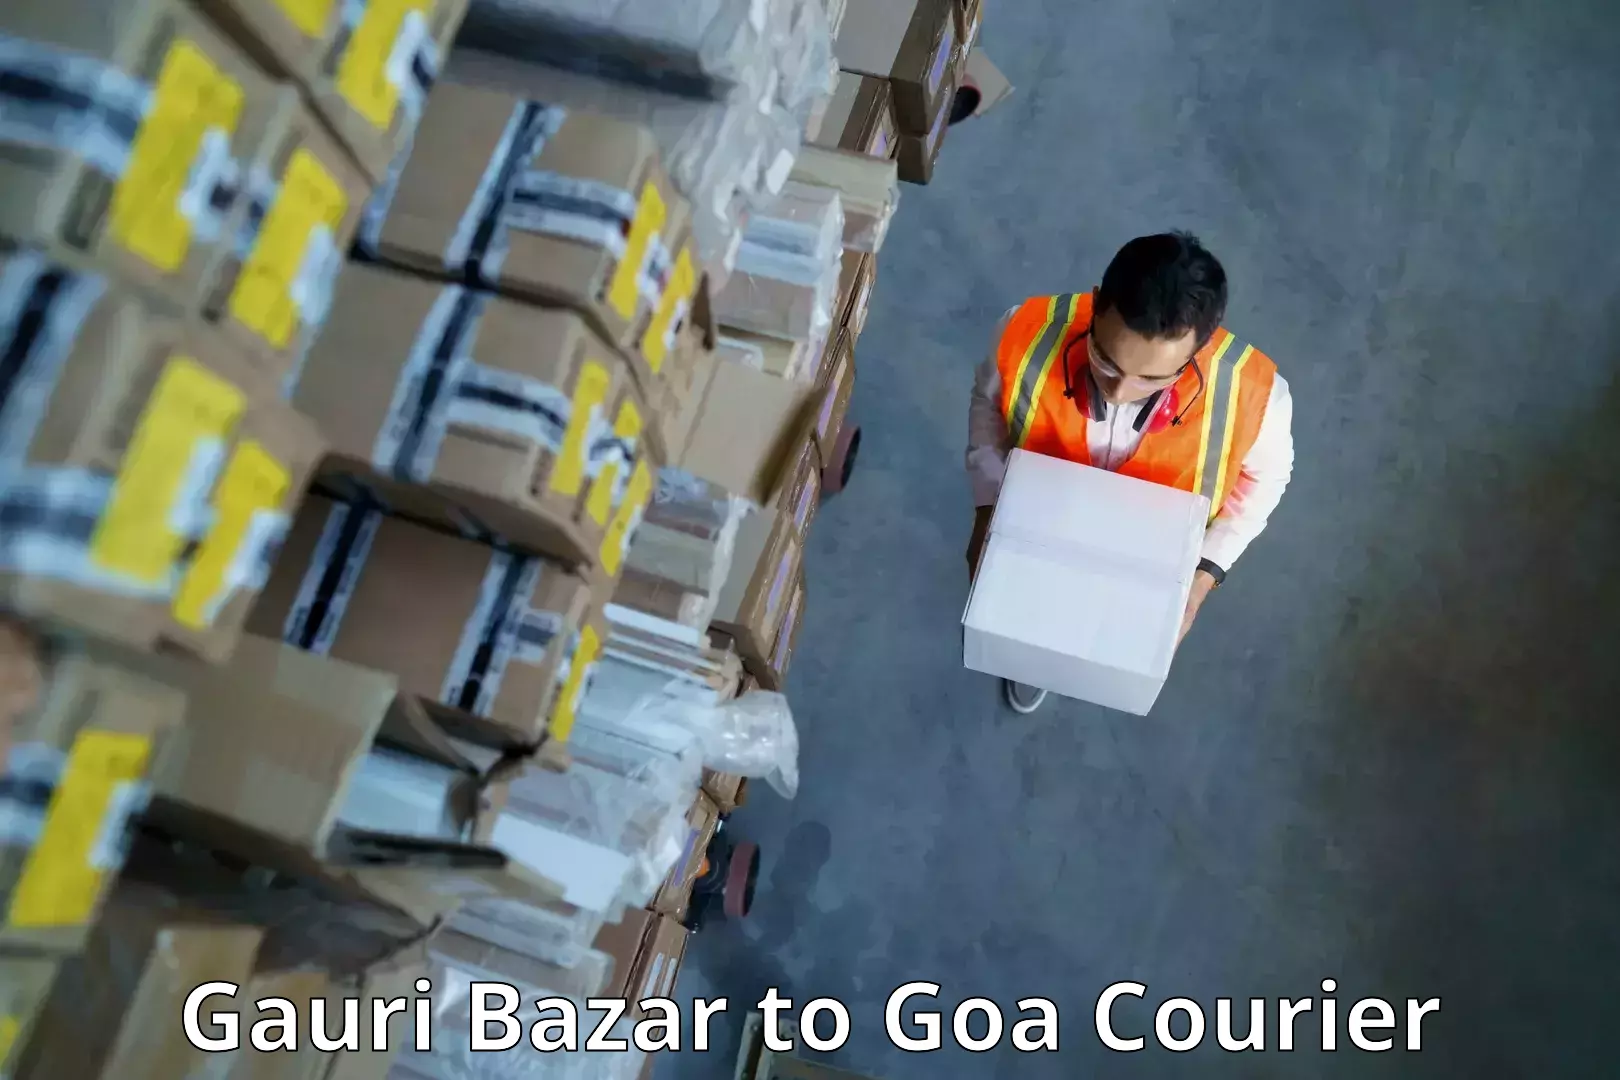 Urban courier service Gauri Bazar to South Goa